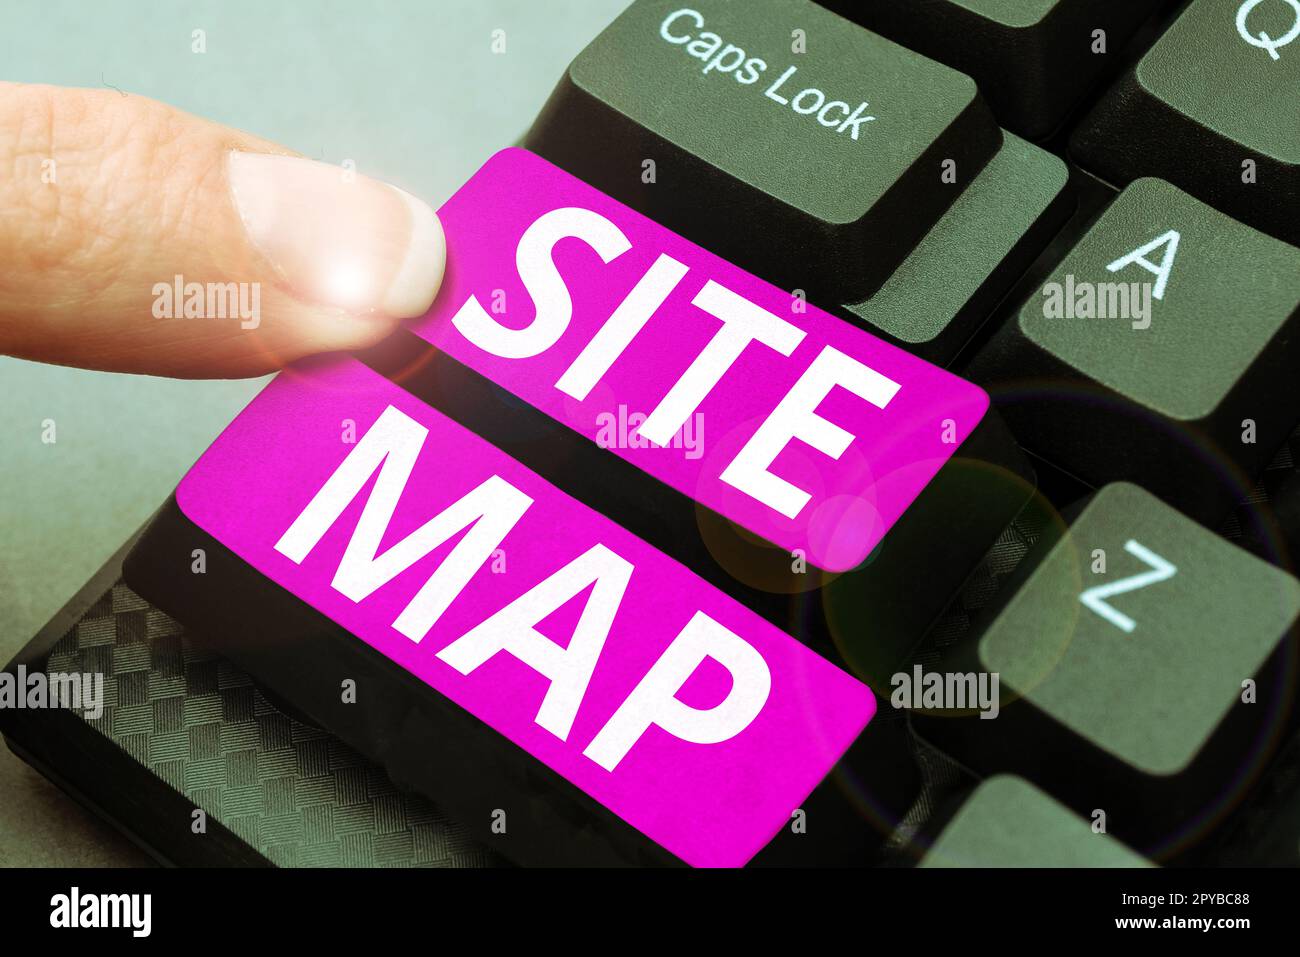 Text für Sitemap wird geschrieben. Konzeptfoto, das sowohl Benutzern als auch Suchmaschinen beim Navigieren auf der Website hilft Stockfoto